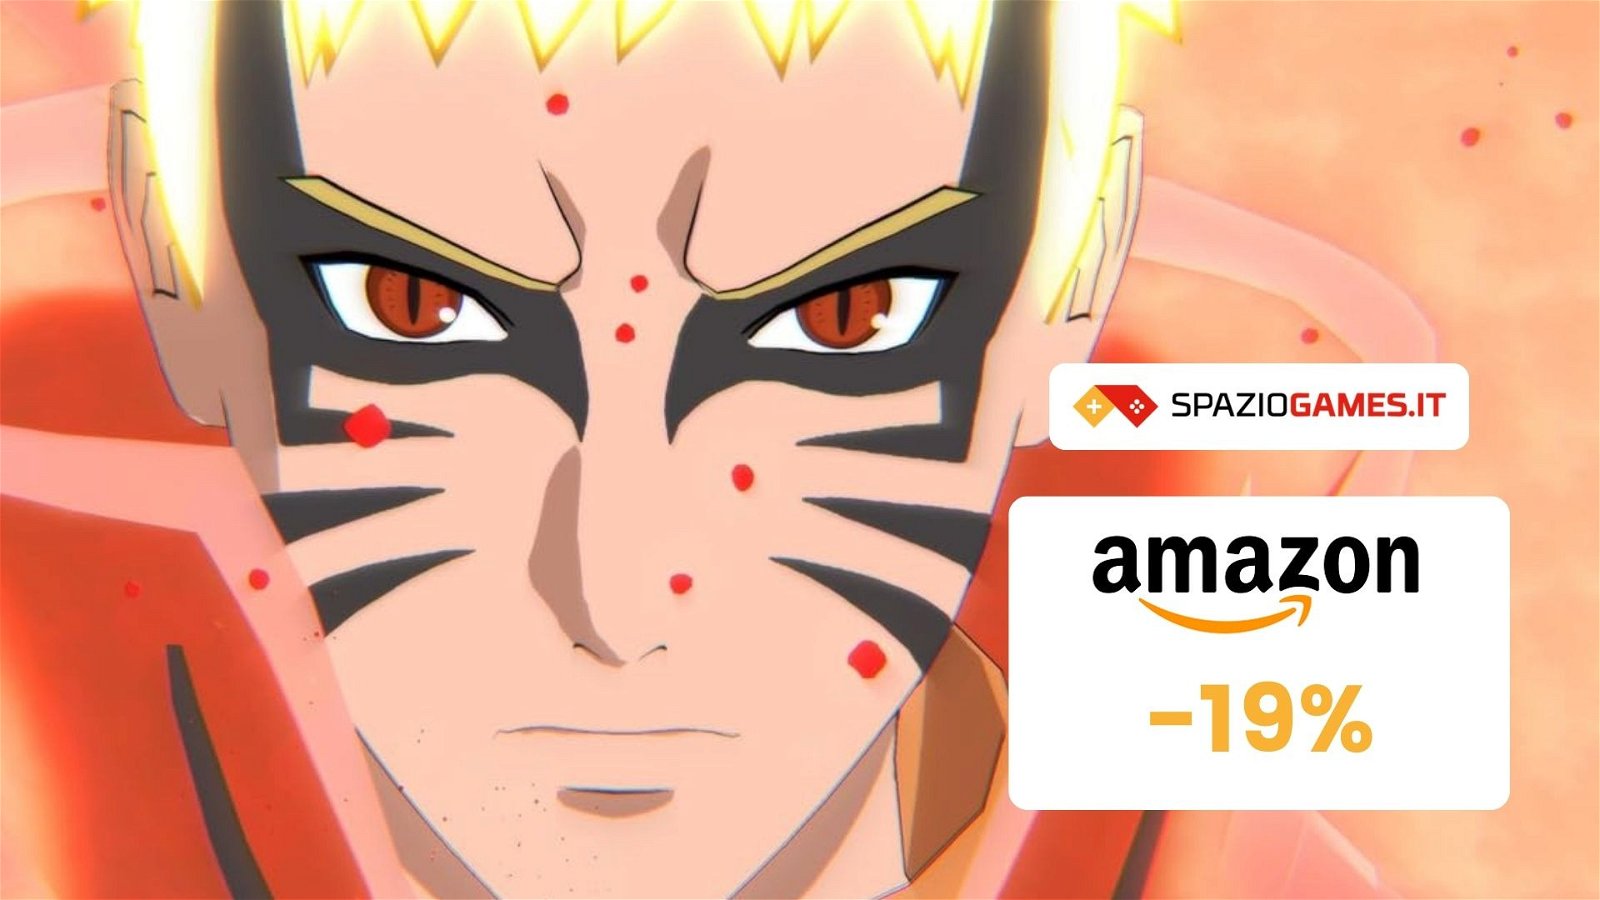 Naruto X Boruto UNS Connection Collection Edition, CHE PREZZO! Su Amazon risparmi il 19%!